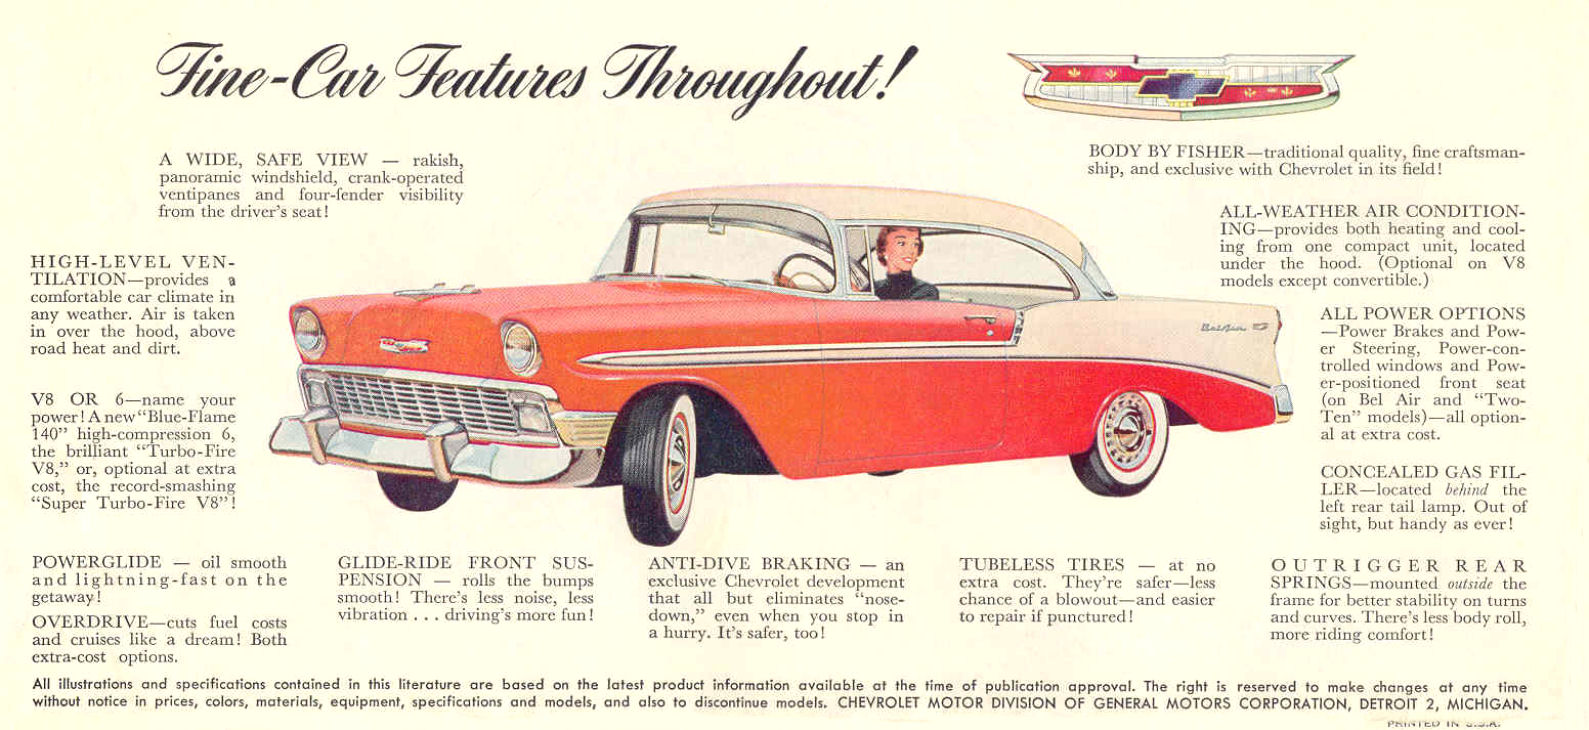 1956_Chevrolet_Foldout-03